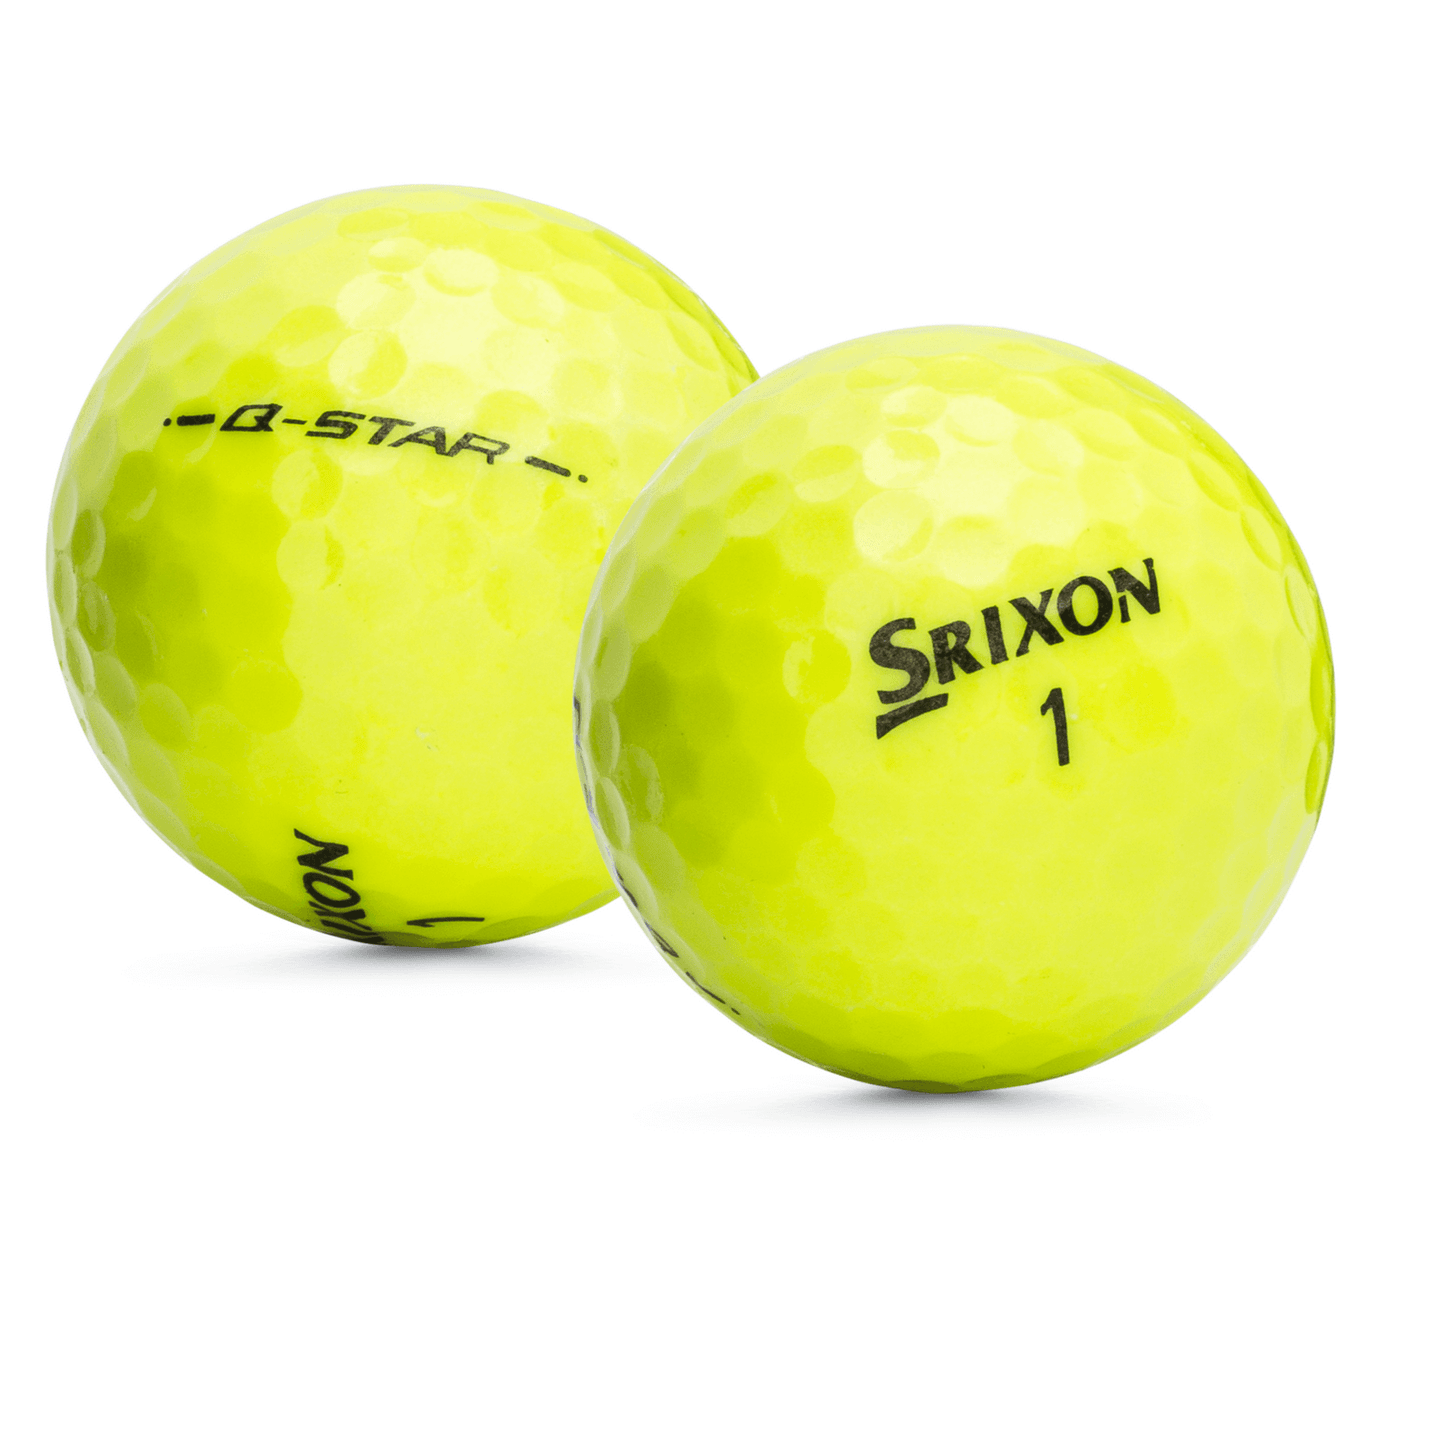 Used Srixon Q-Star/Q-Star Tour Mix Yellow Golf Balls - 1 Dozen